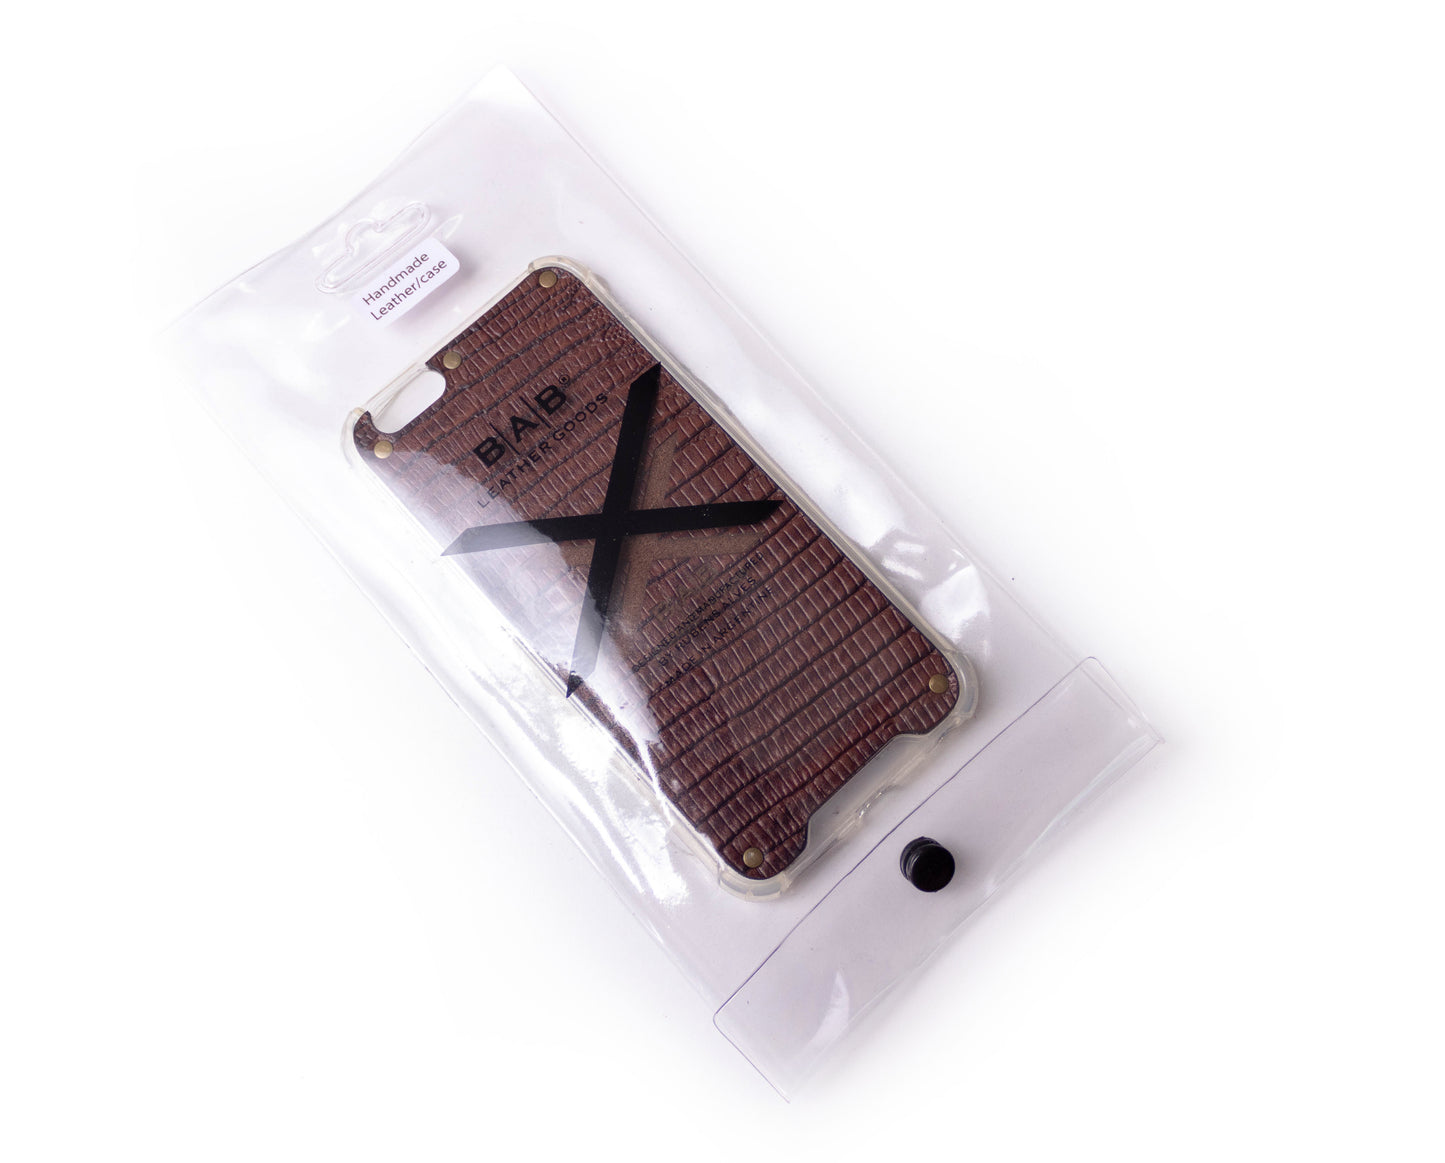 Coque pour iPhone en Cuir Véritable Lézard Brun Texturé, découpé et gravé au laser, 5 Rivets en Bronze.- F36